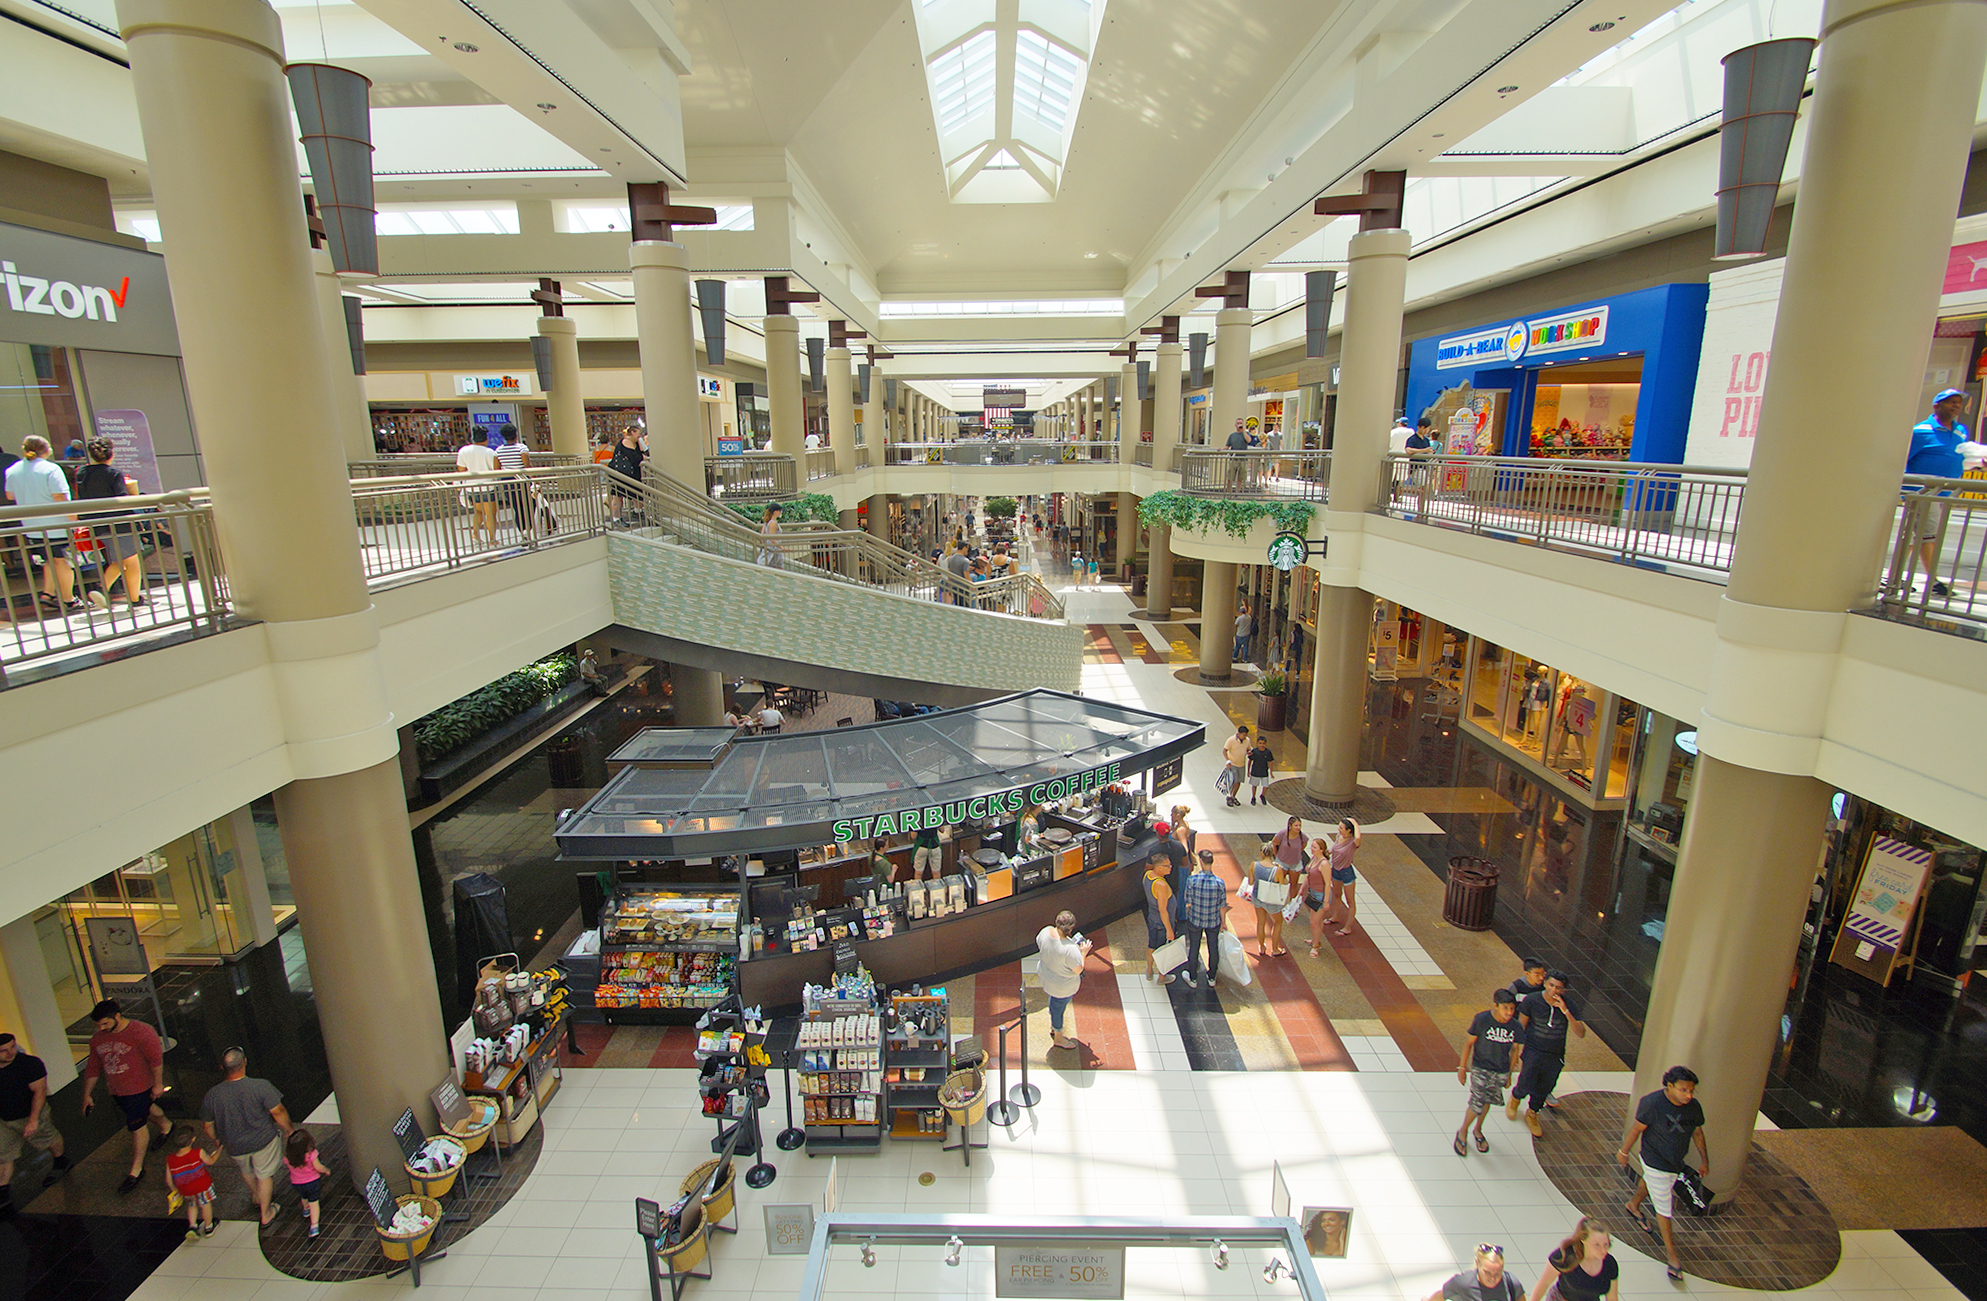 Galleria Mall